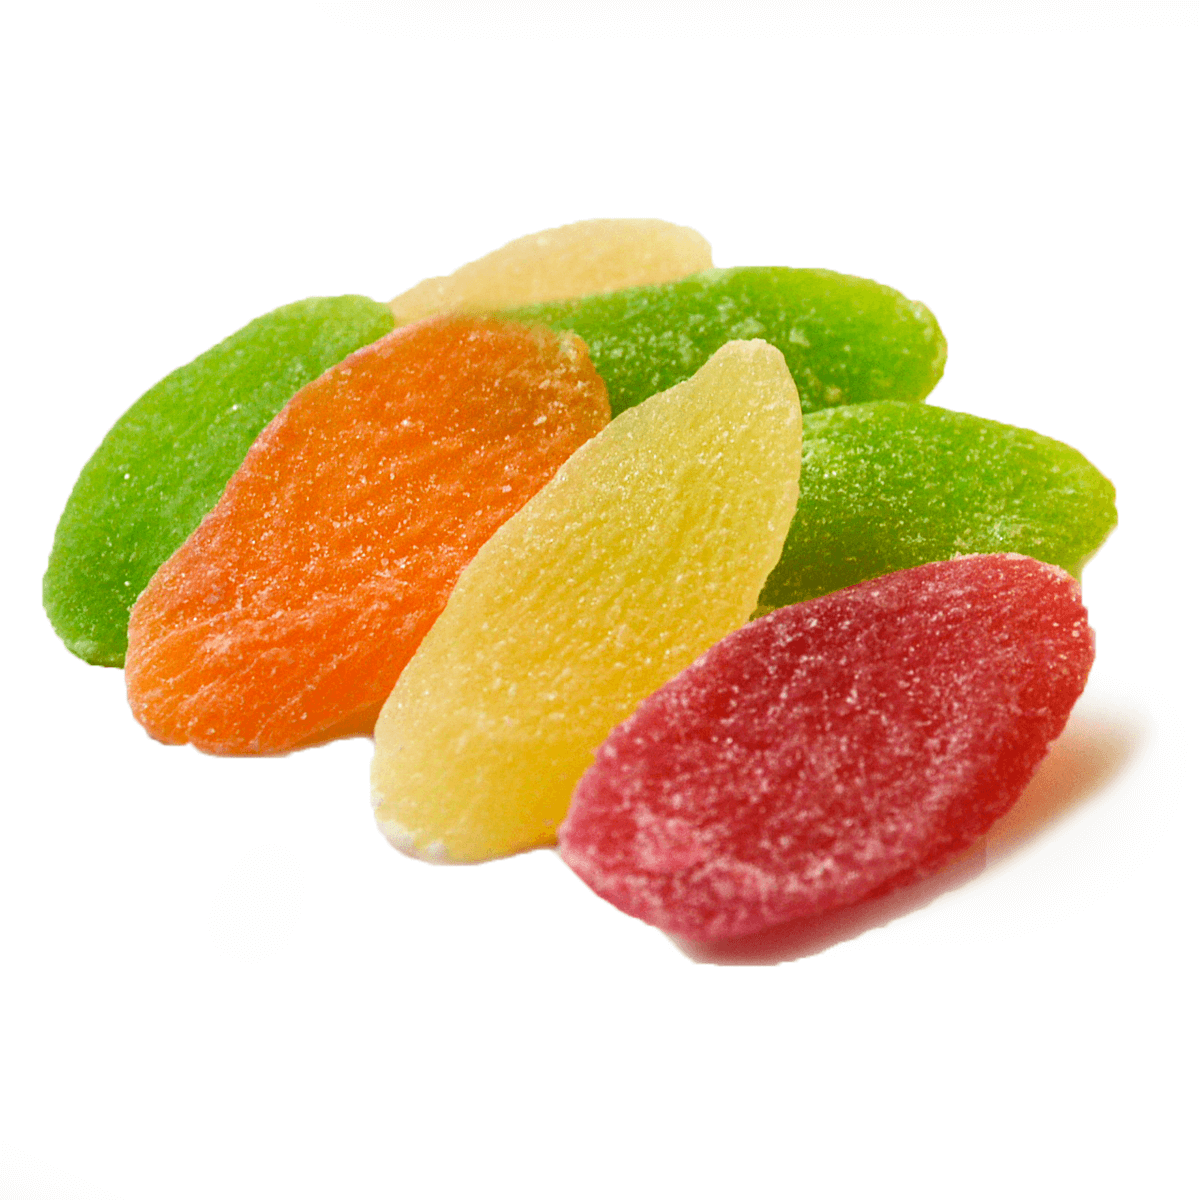 Польза и вред цукатов из фруктов, ягод и овощей для здоровья человека